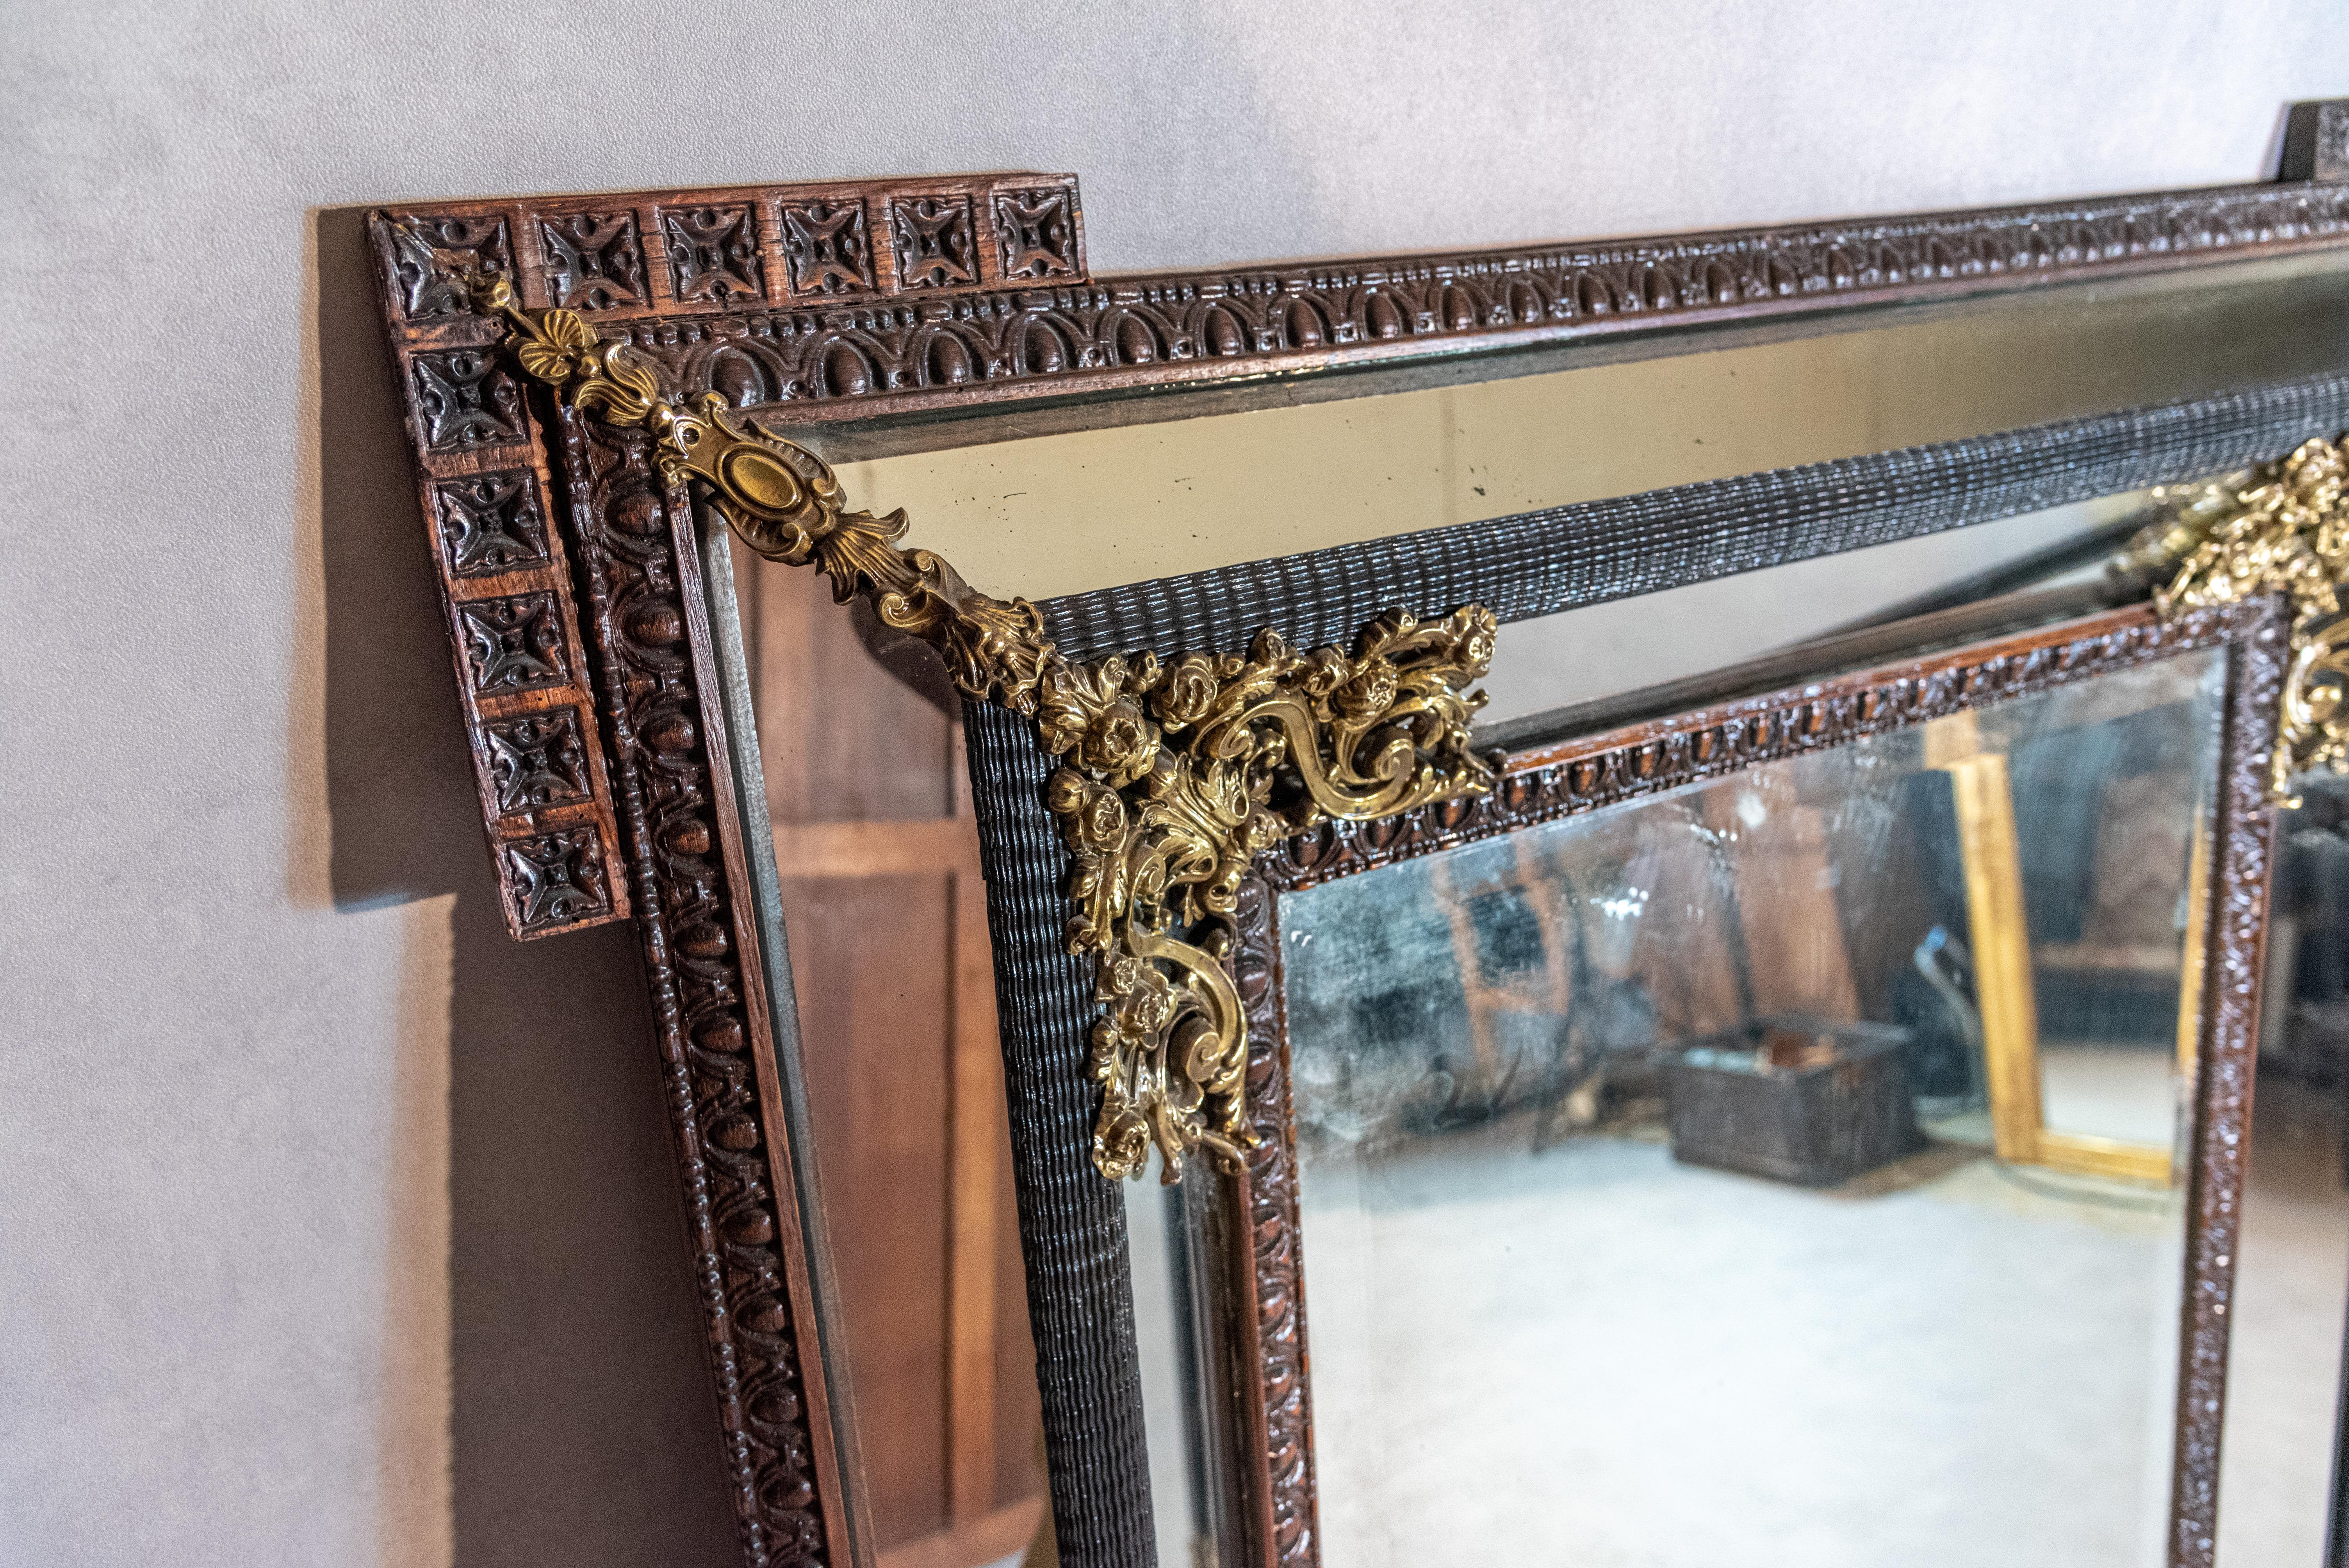 Ein einzigartiger französischer Spiegel im Stil von Napoleon III aus dem 19. Jahrhundert mit schönen Proportionen und einem einzigartigen Rahmendesign. Dieser authentische Spiegel zeichnet sich durch wunderbare Messingverzierungen und